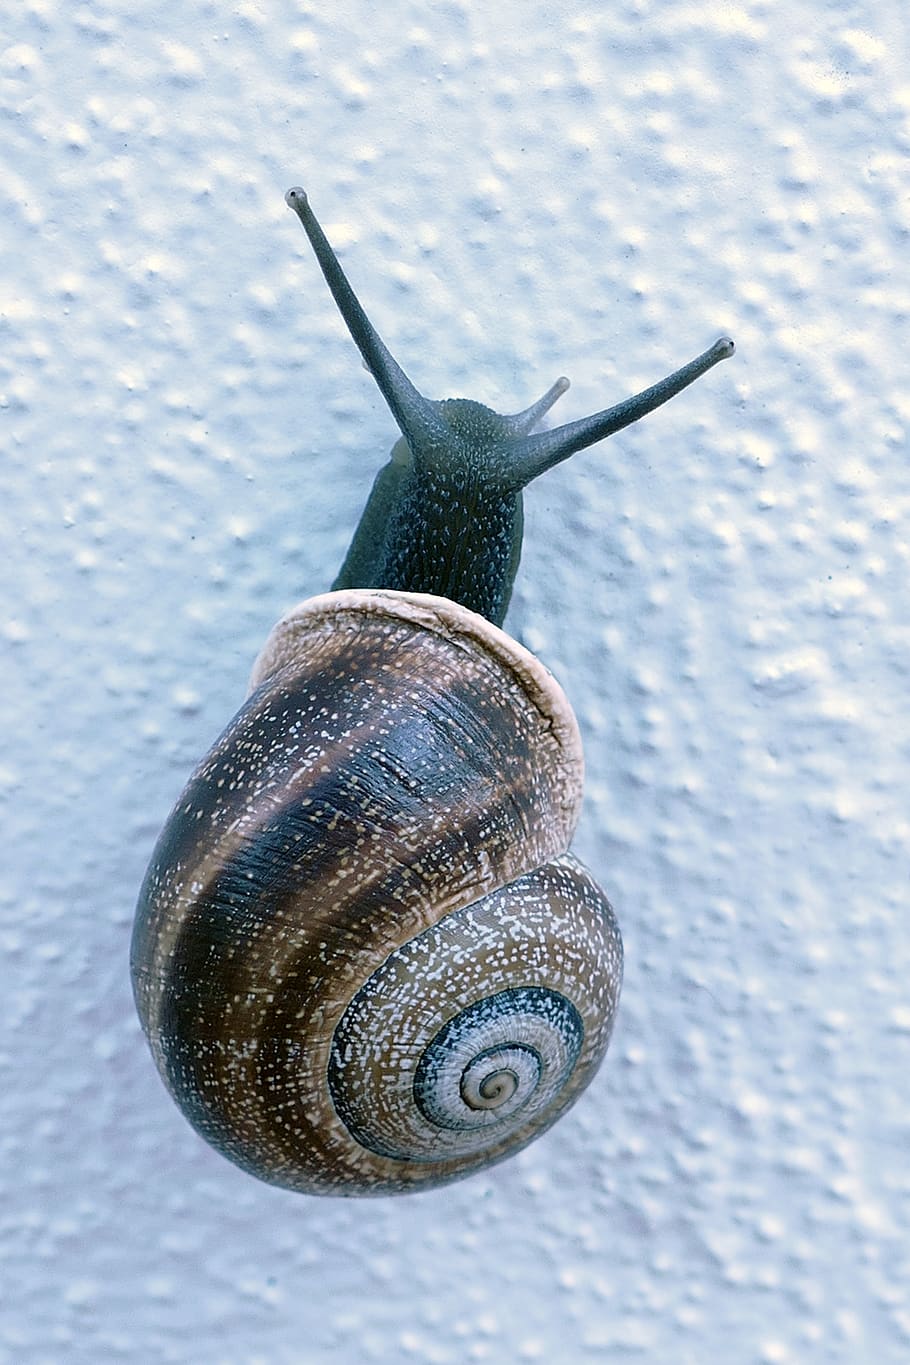 snail, mollusc, huisjesslak, cochlea, feeler, slow, slowly, crawling, gastropod, one animal